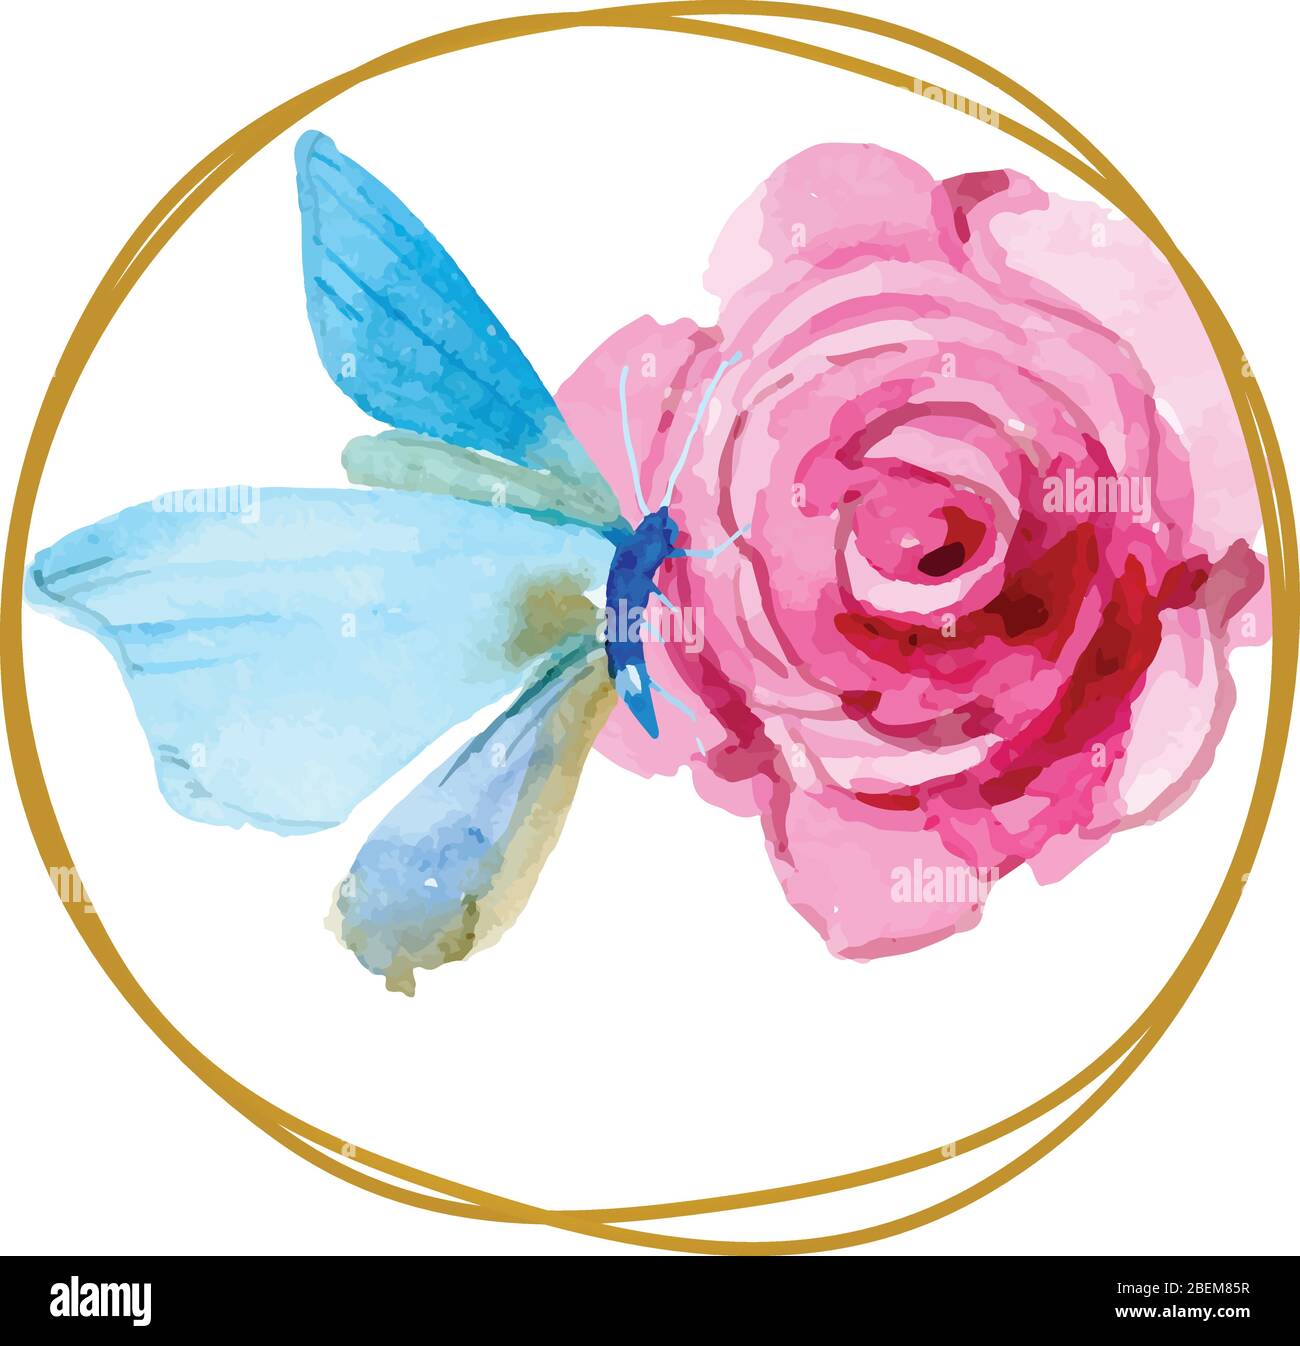 Schmetterling auf rosa Rose innerhalb der Kreise Aquarell Logo Vektor Stock Vektor